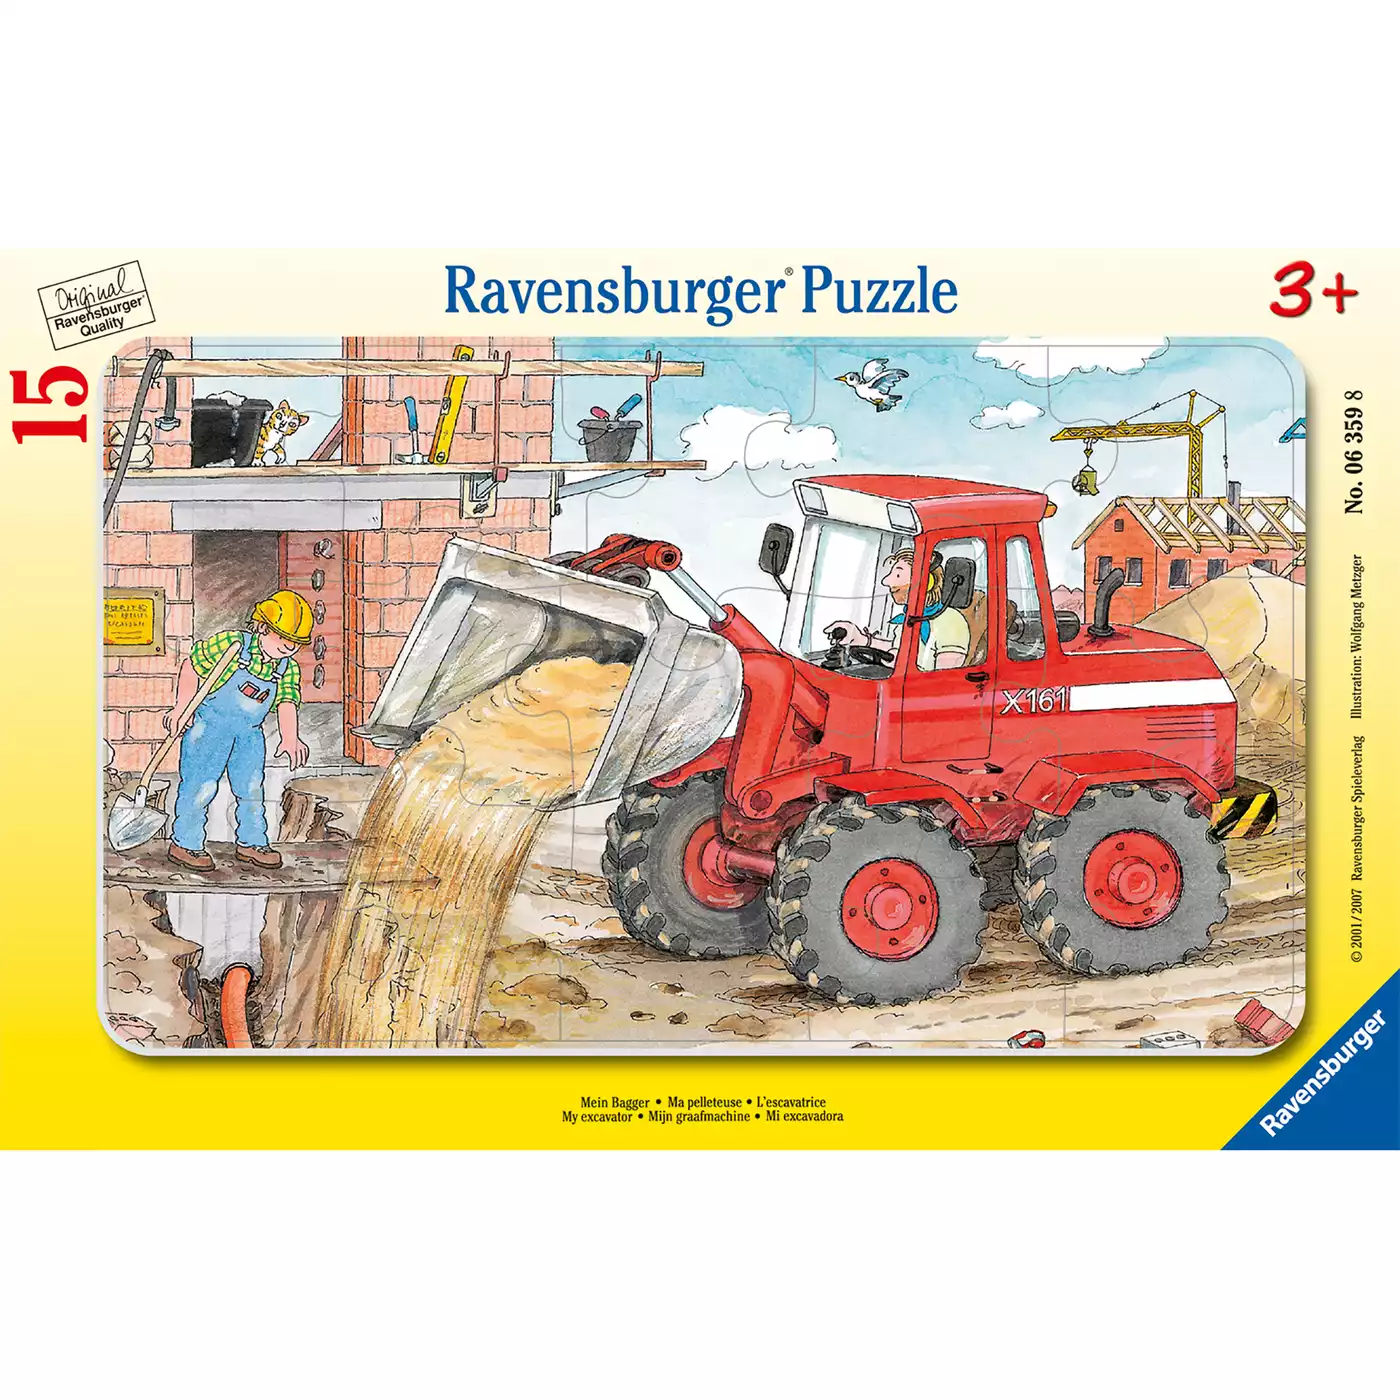 Kinderpuzzle Mein Bagger Ravensburger 2000511219500 1